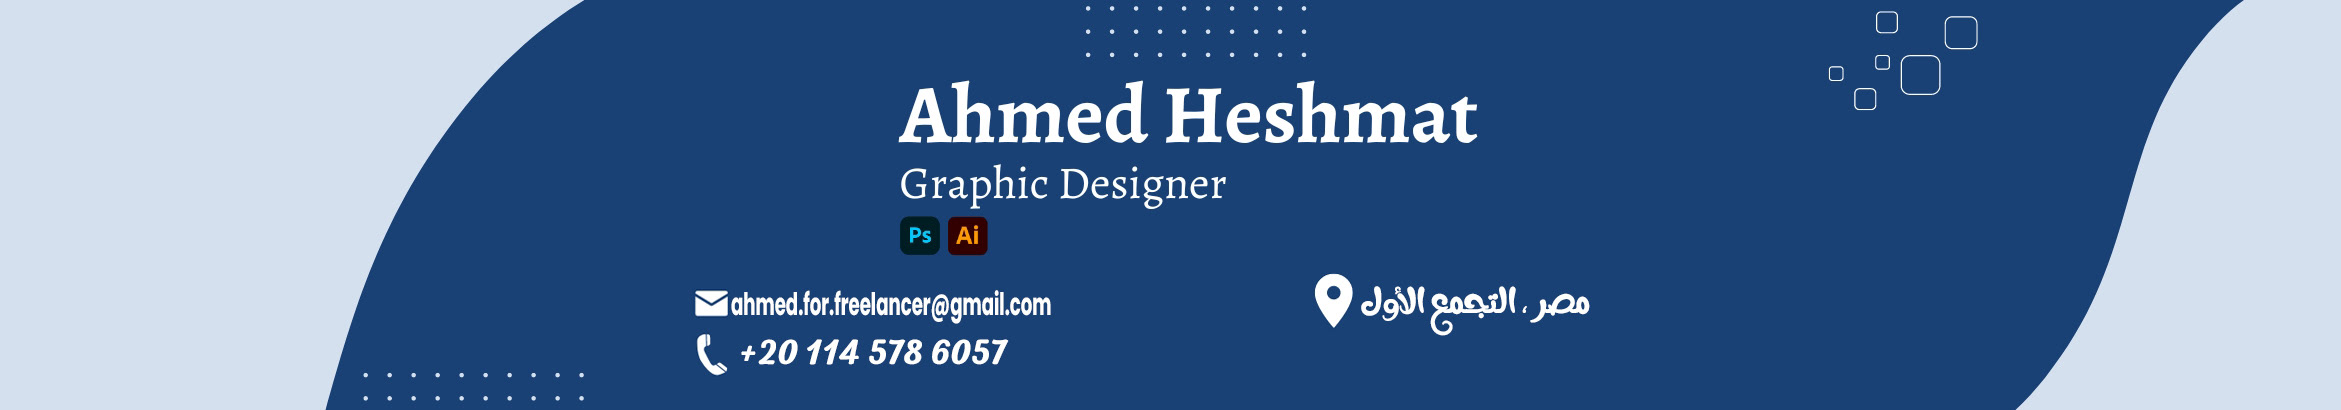 Banner de perfil de Ahmed Heshmat